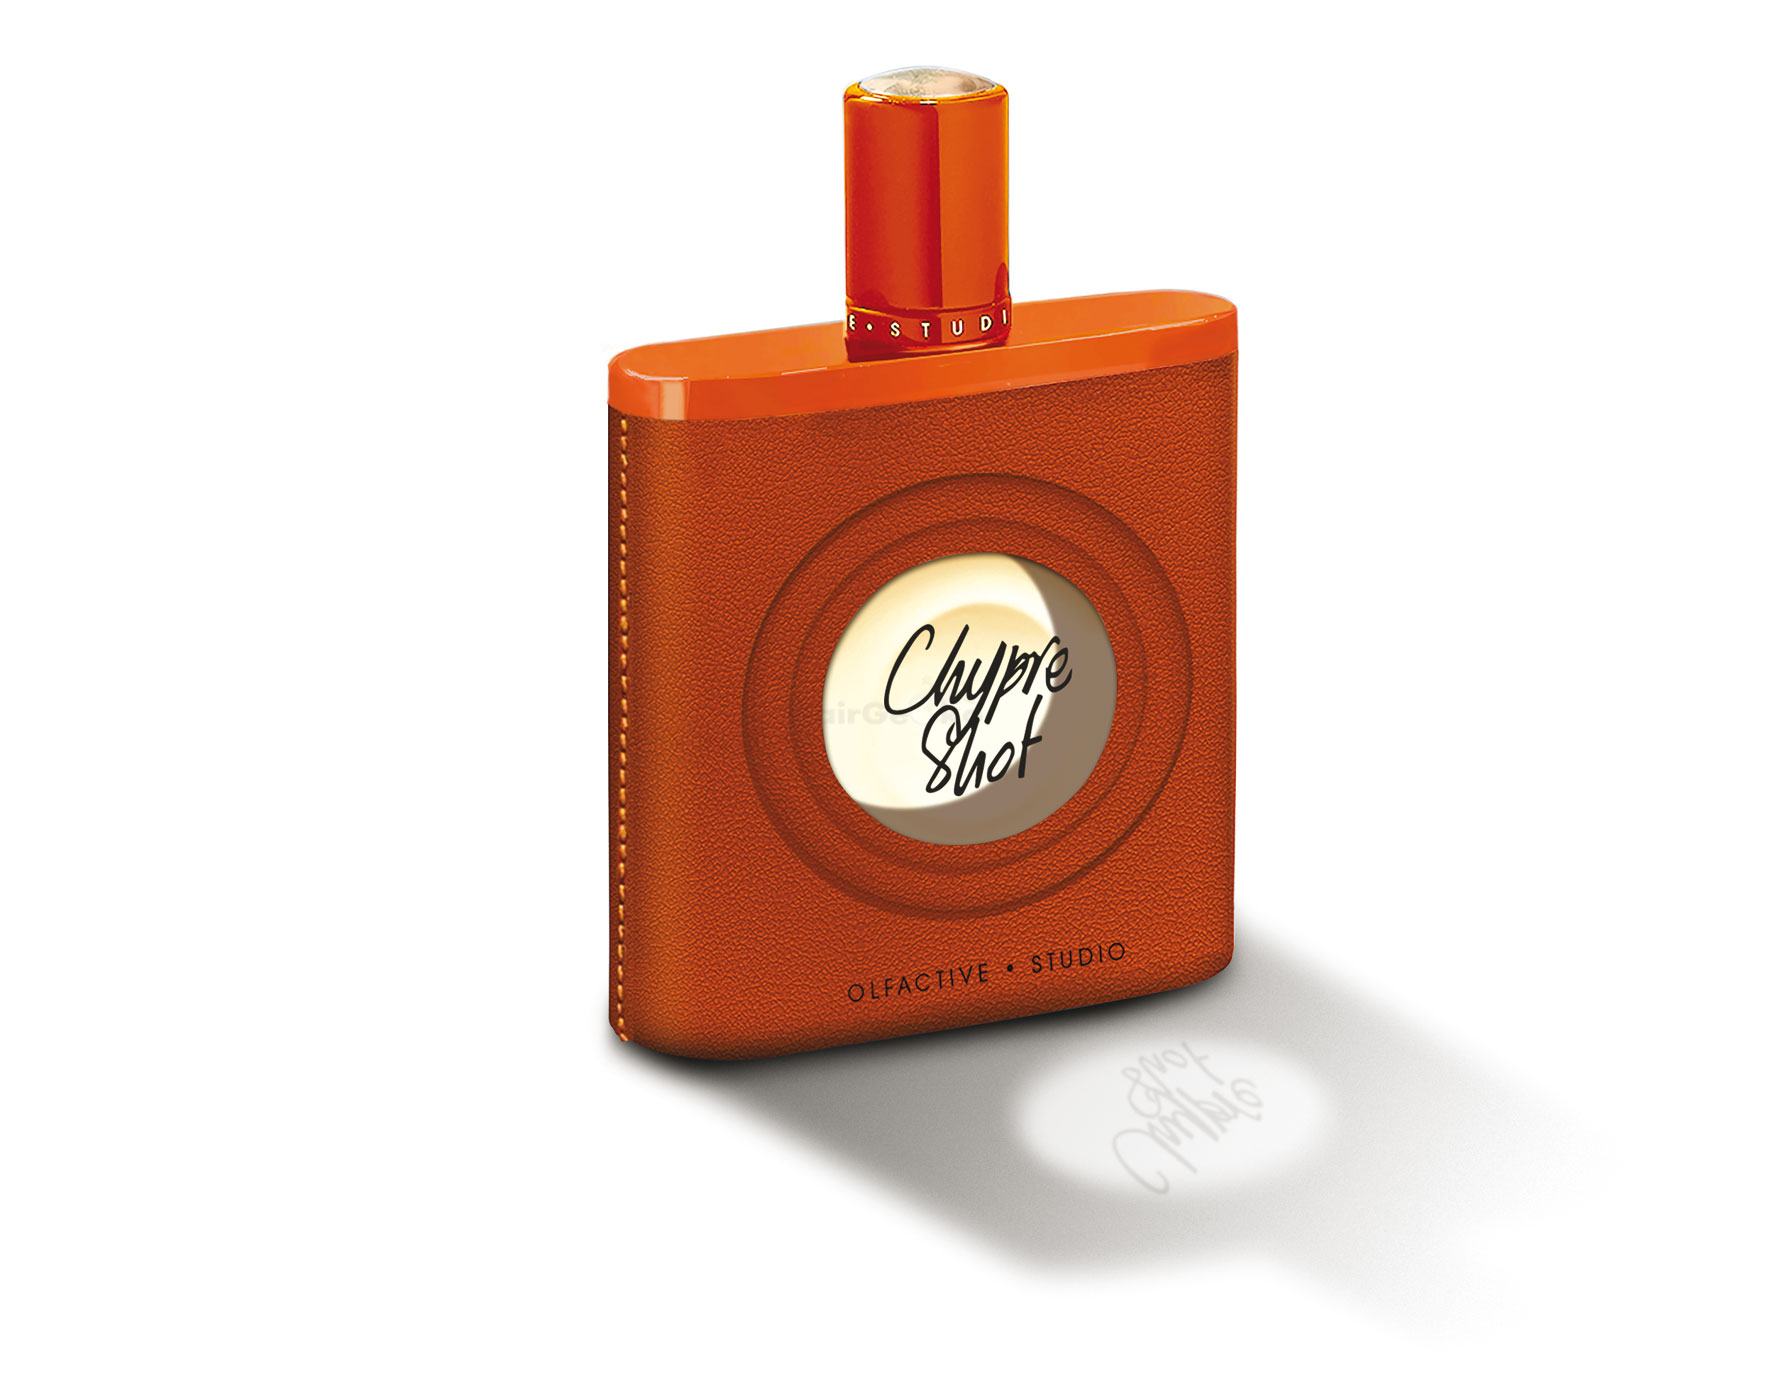 Olfactive Studio Collection Sepia - Chypre Shot Extrait de Parfum Abfüllung 5 ml